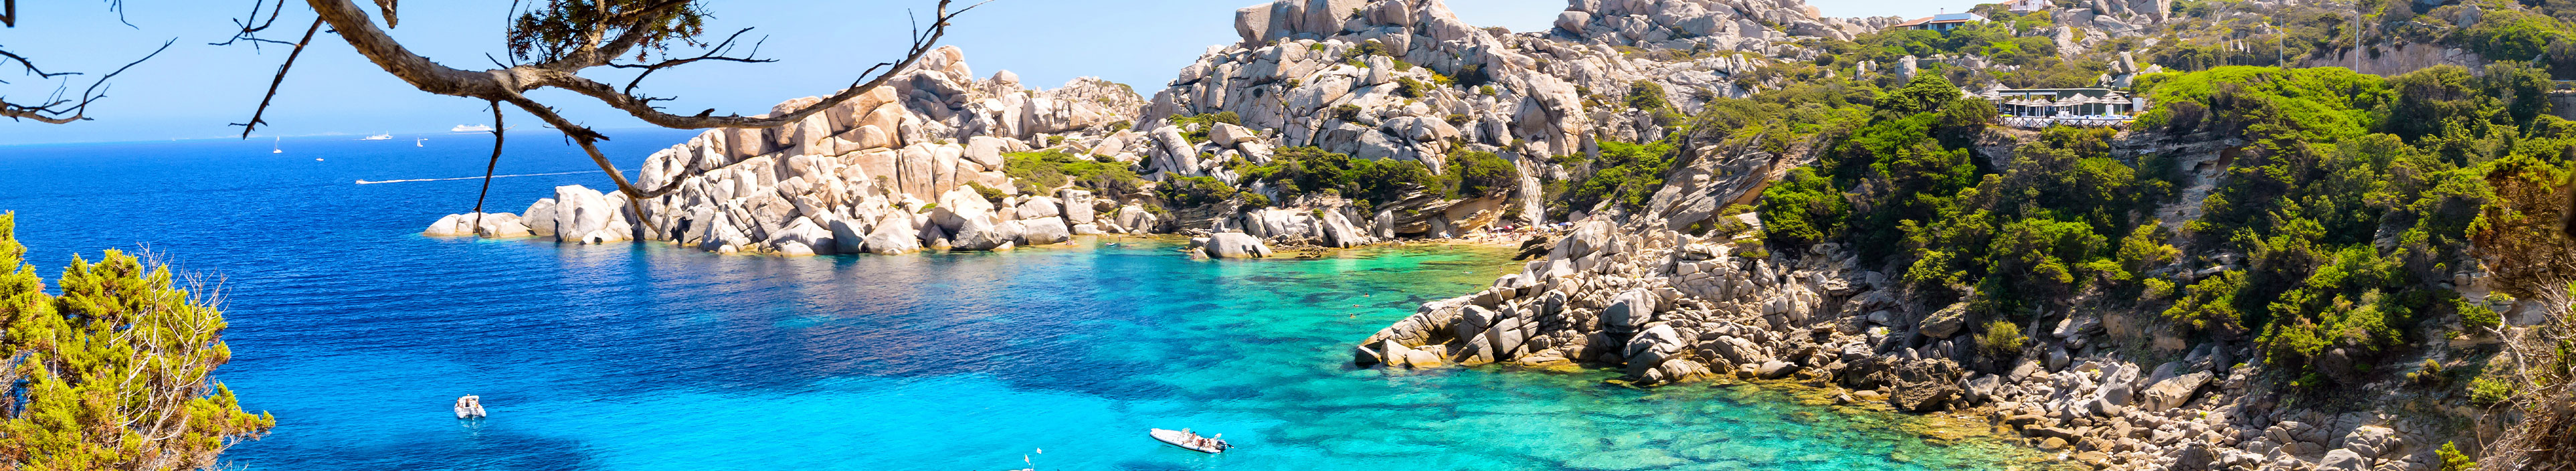 Urlaub Sardinien. Felsenbucht mit türkisblauem Wasser und weißen Fischerbooten.